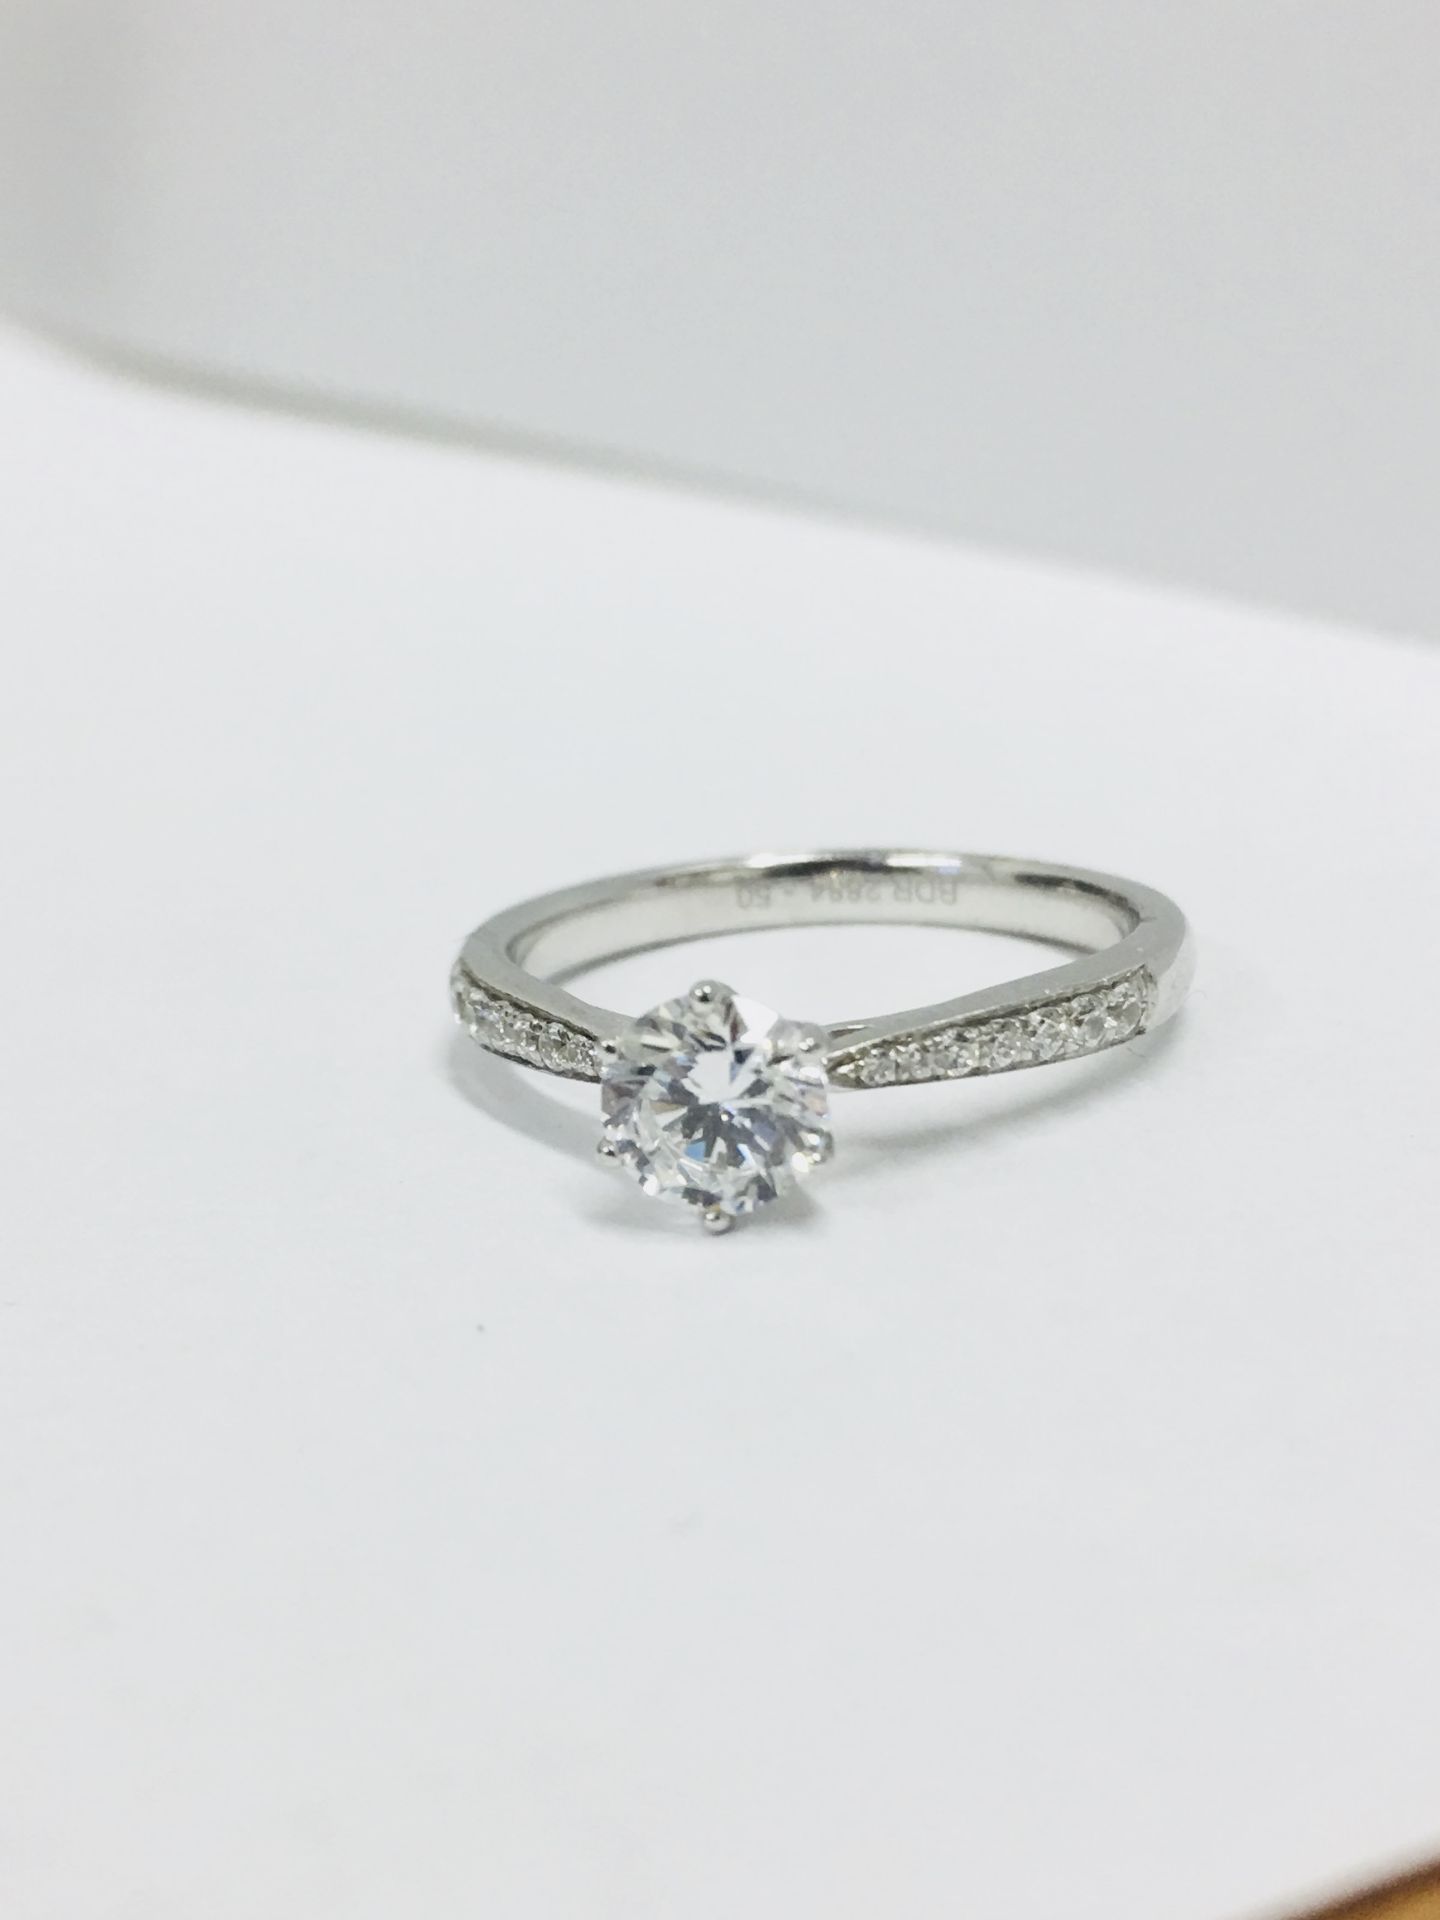 Platinum diamond solitaire ring,050ct brilliant cut diamond h colour vs clarity(clarity enhanced),